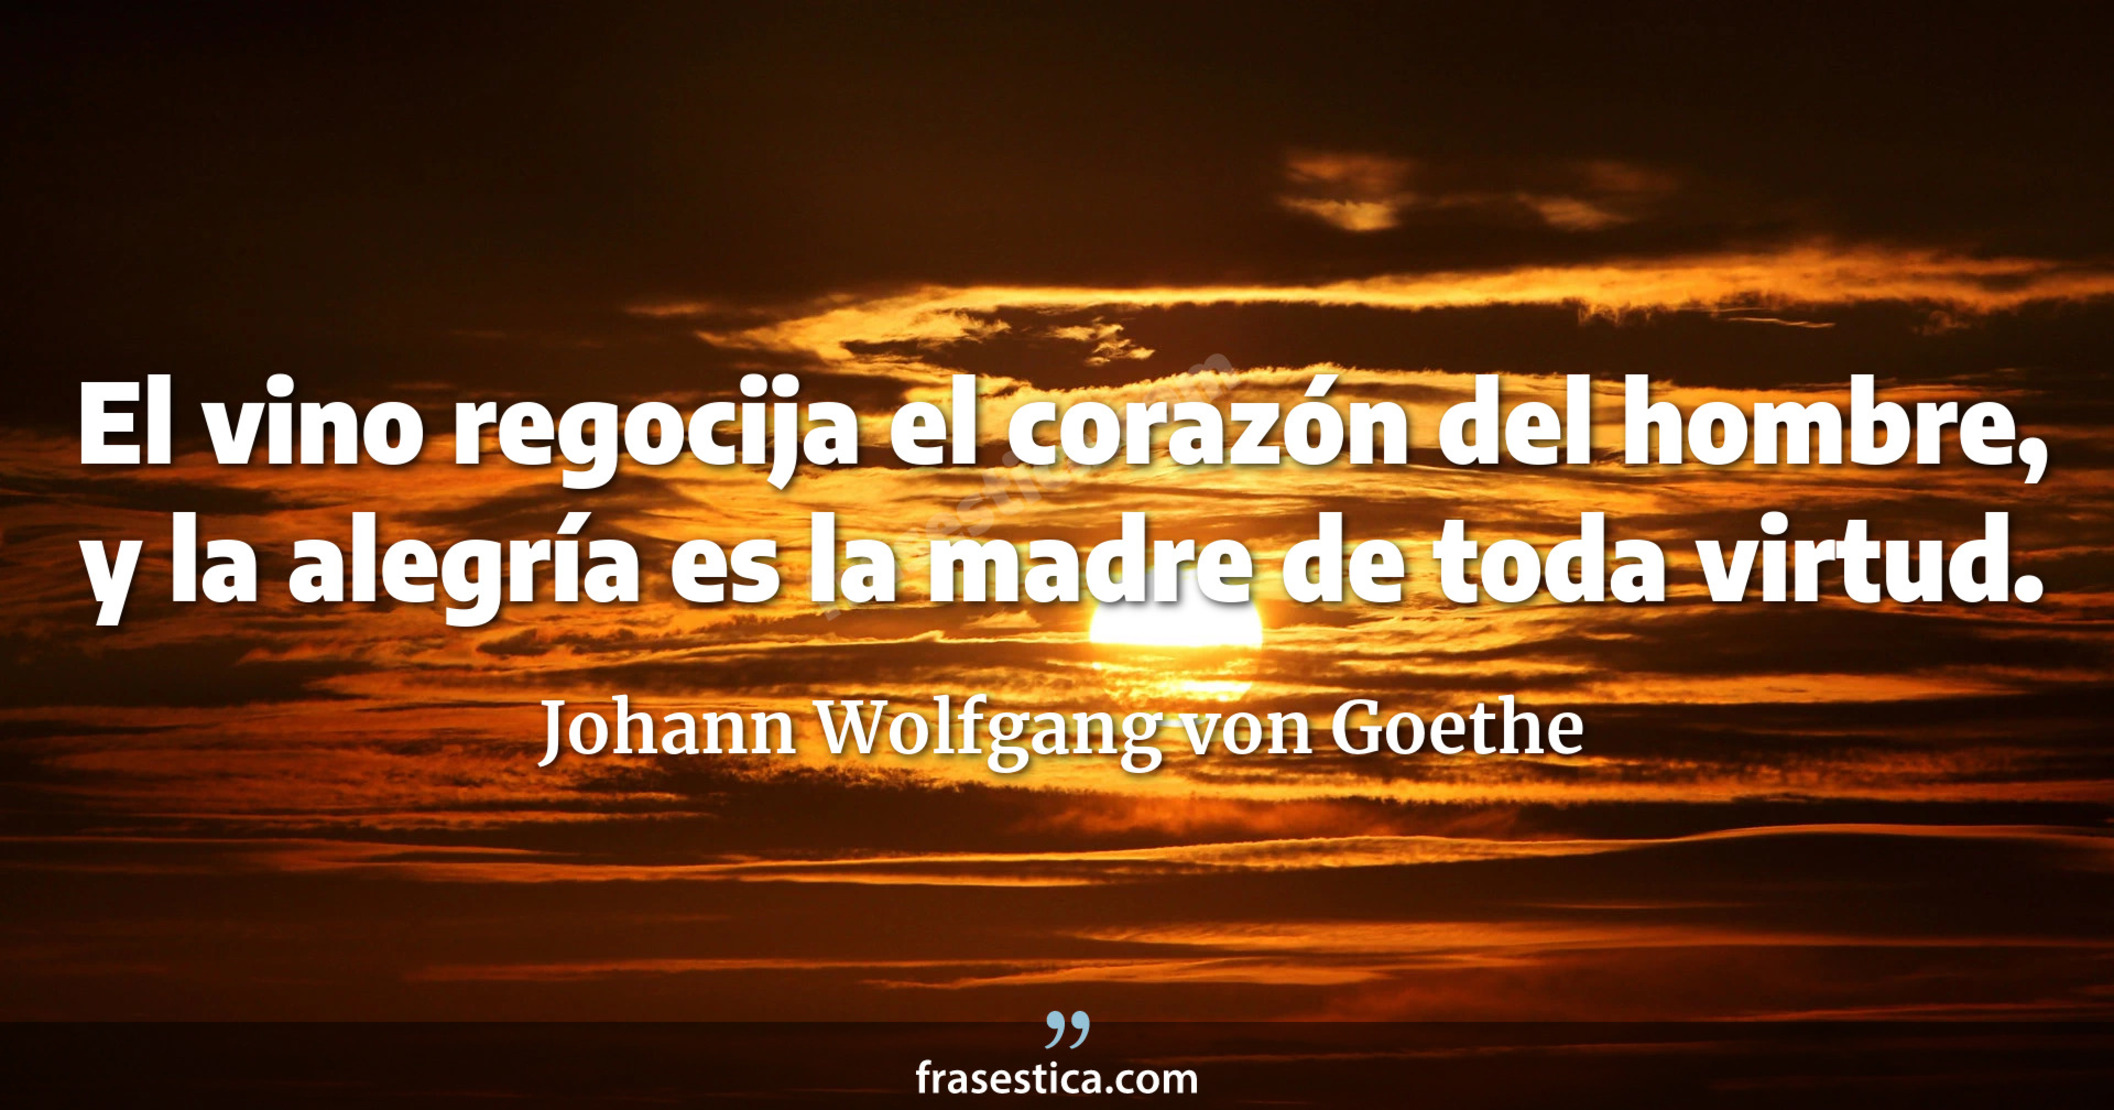 El vino regocija el corazón del hombre, y la alegría es la madre de toda virtud. - Johann Wolfgang von Goethe